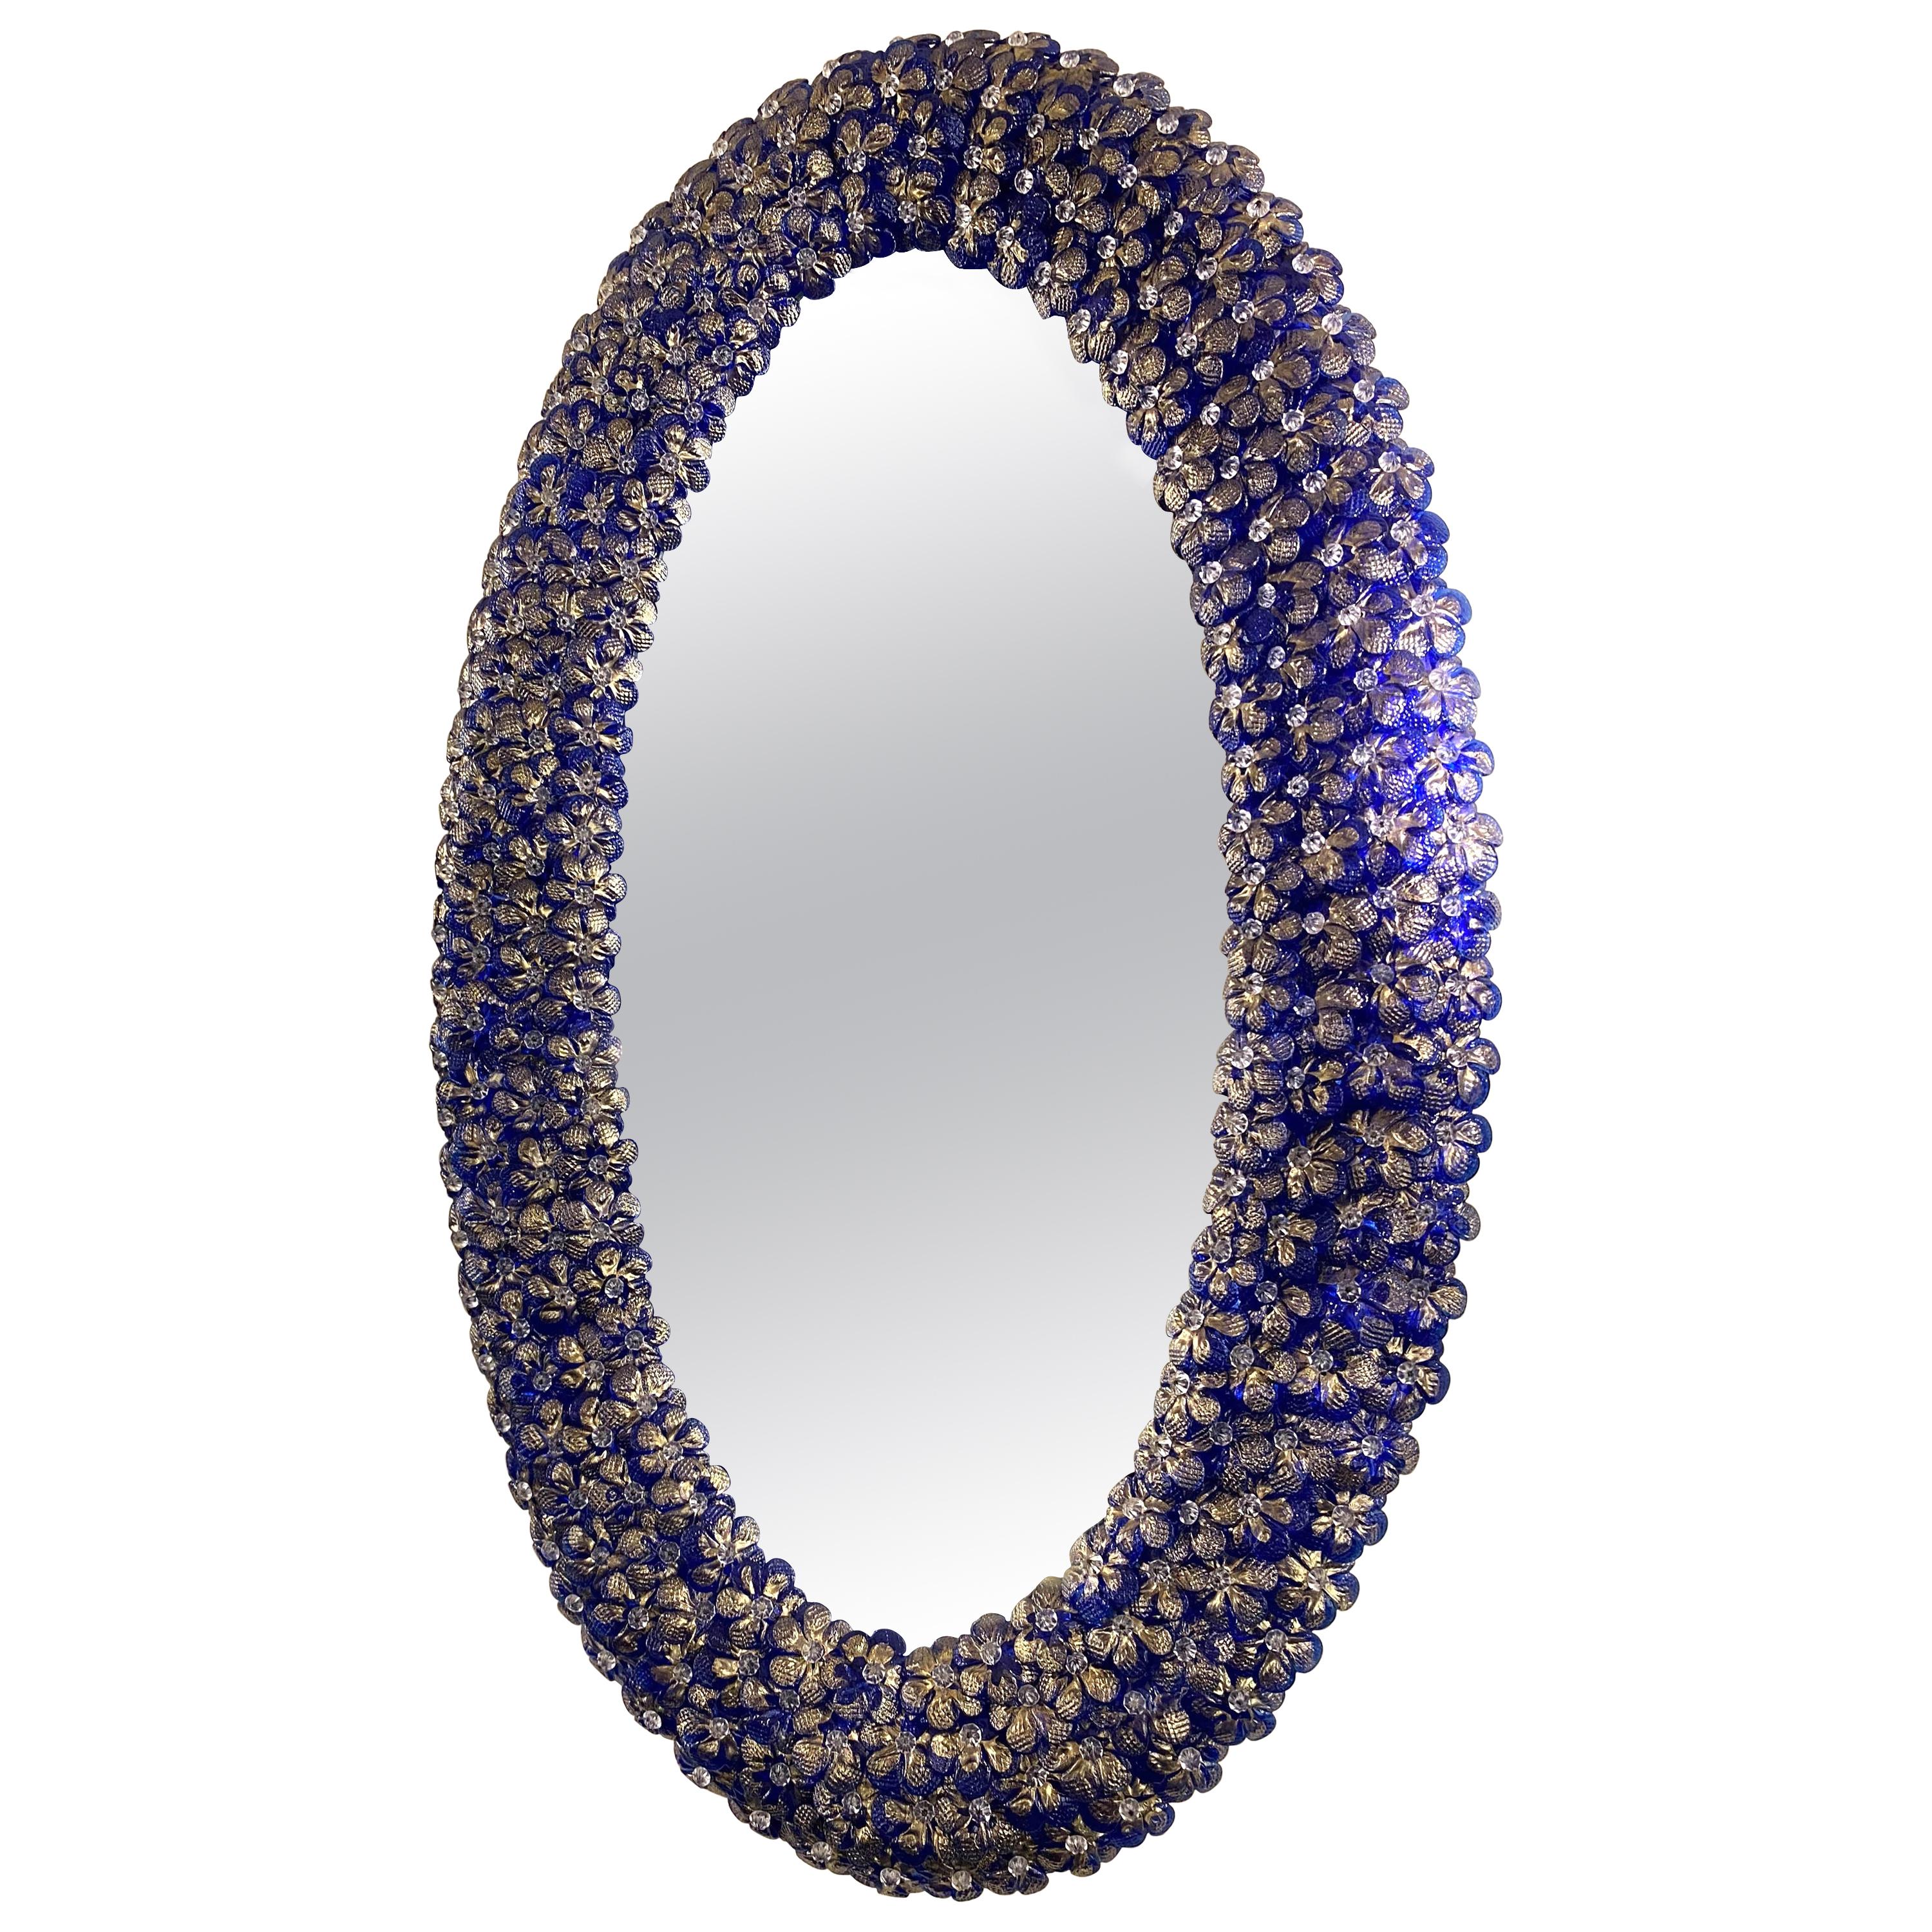 Ovaler Spiegel aus Muranoglas in Blütenform mit herrlicher Blume